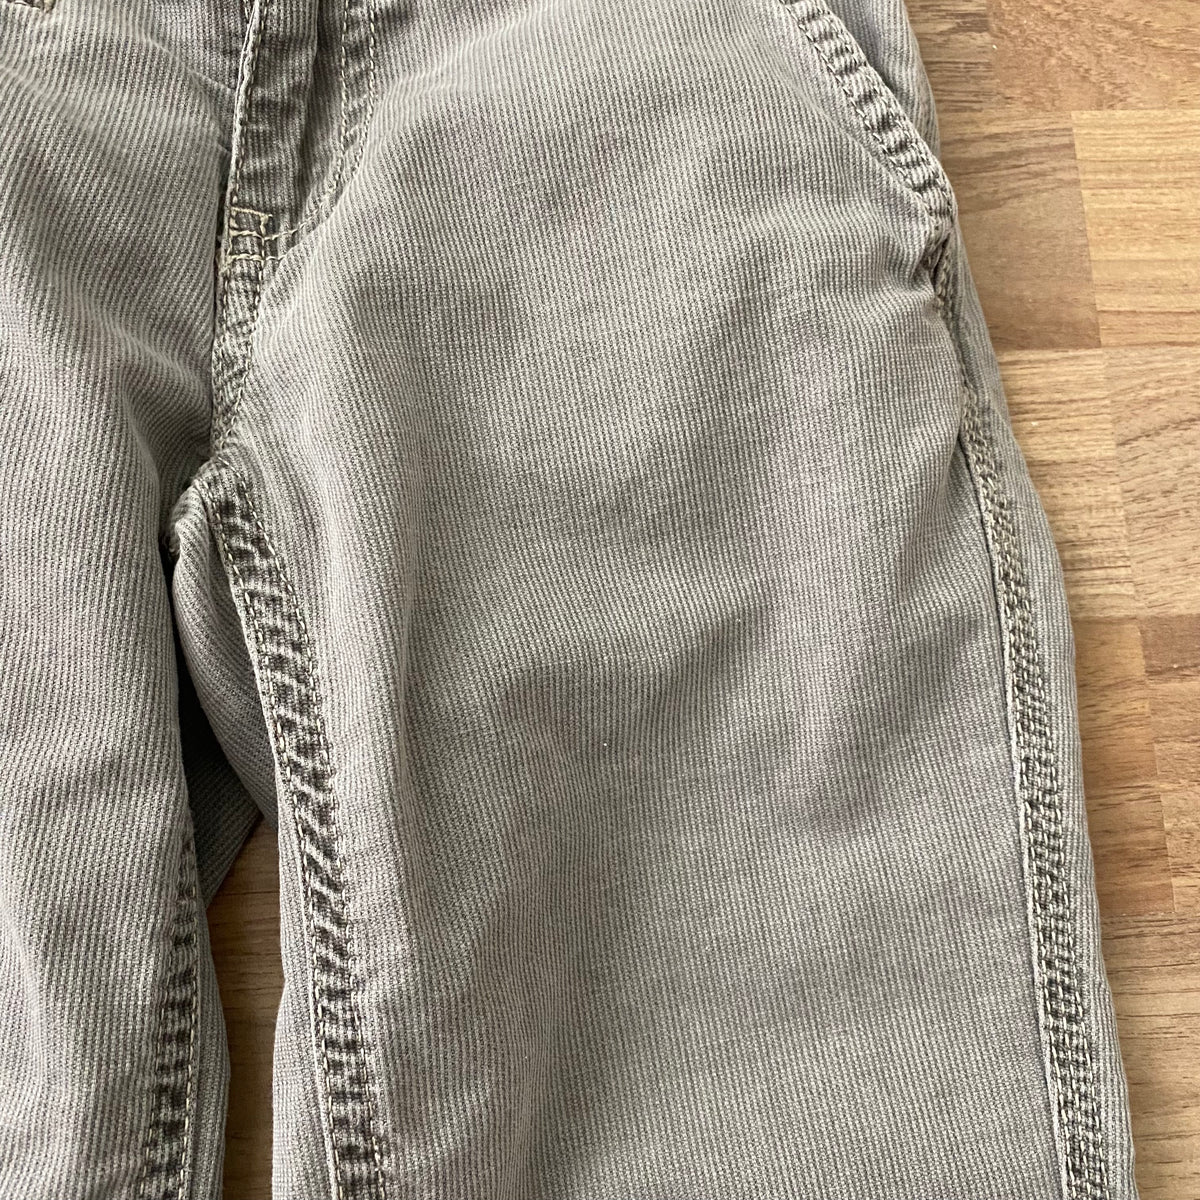 Pants (Boys Size 7)